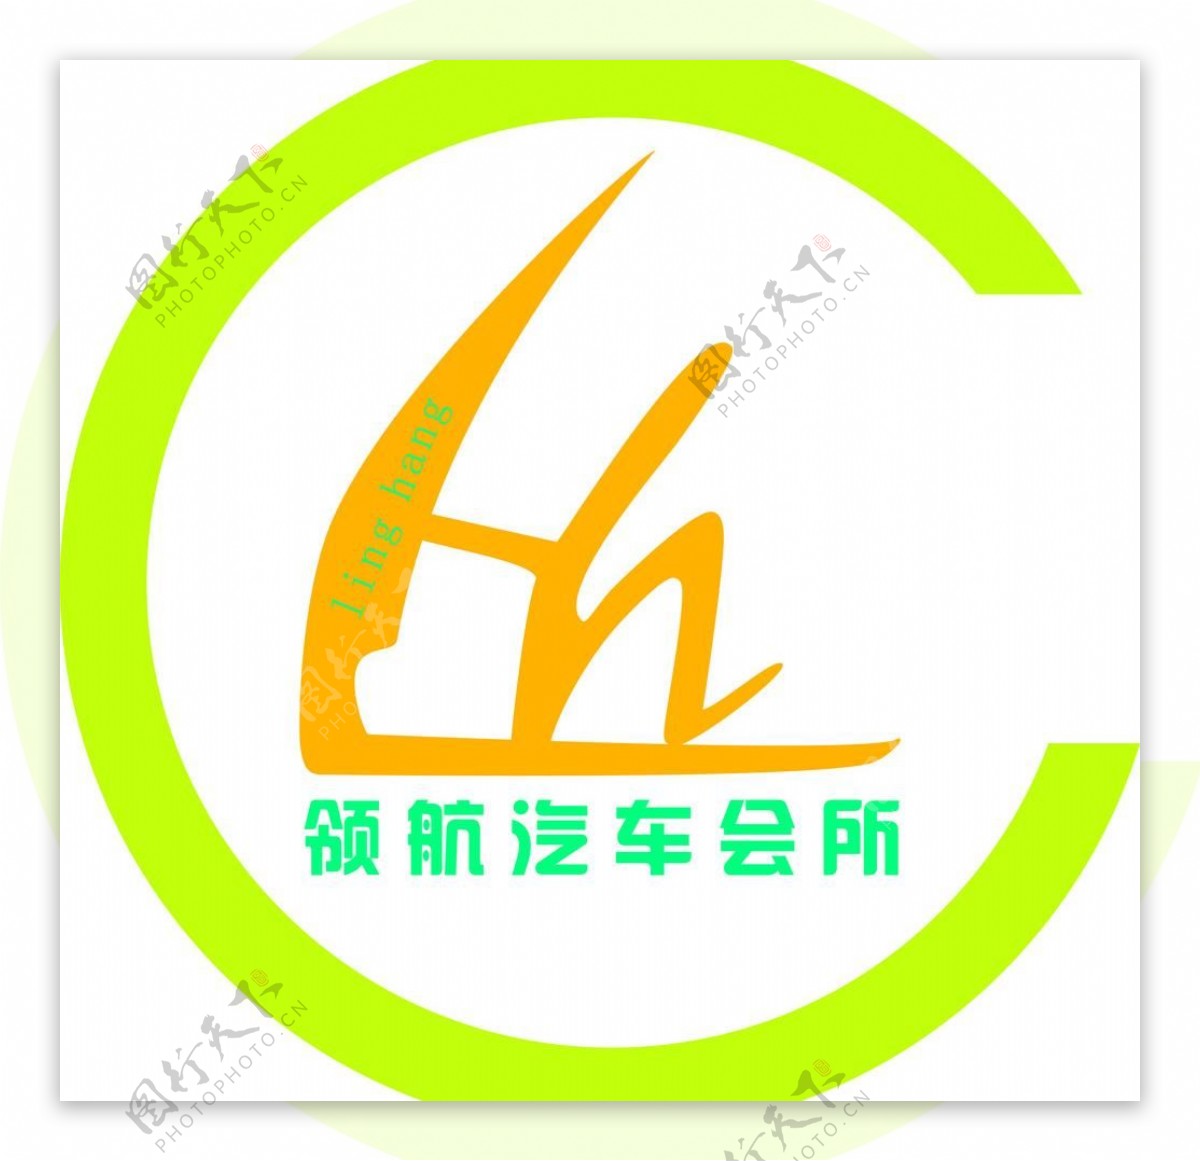 领航汽车会所logo图片